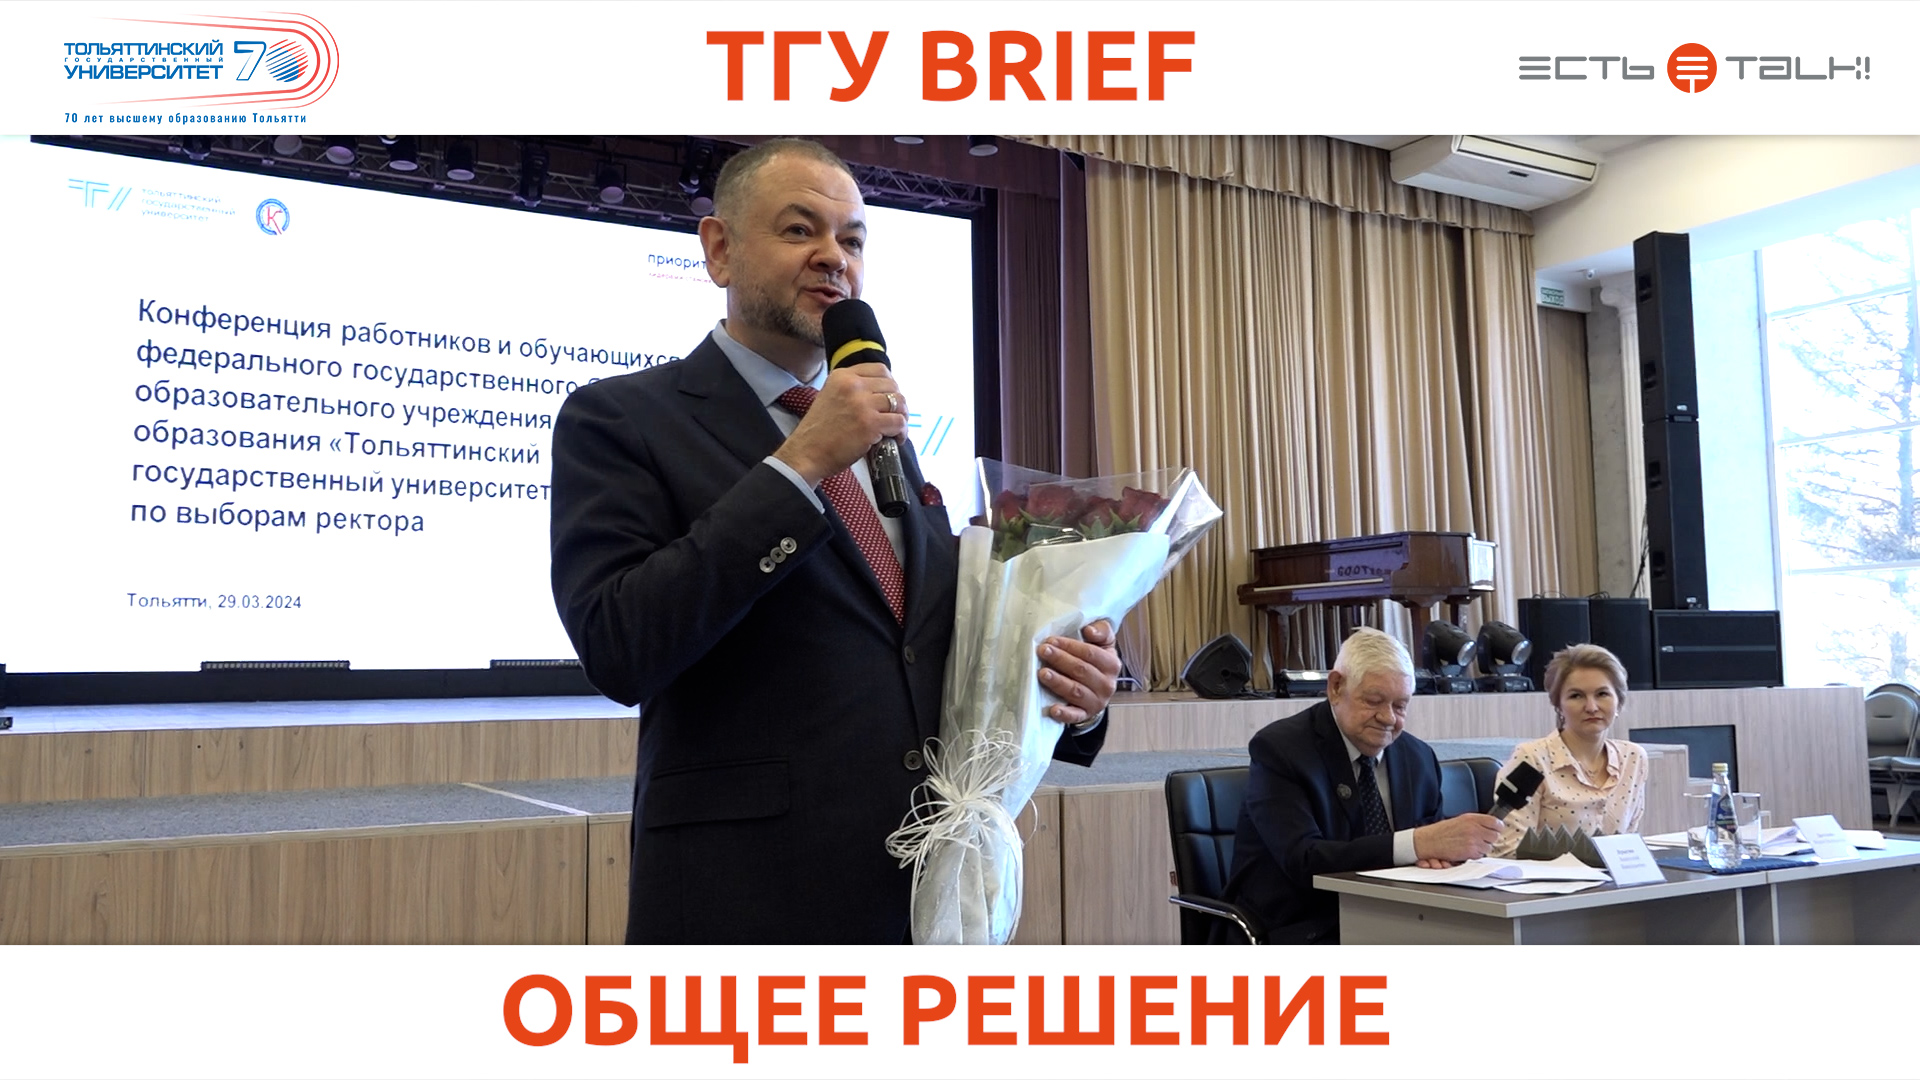 ТГУ Brief: Выборы ректора ТГУ